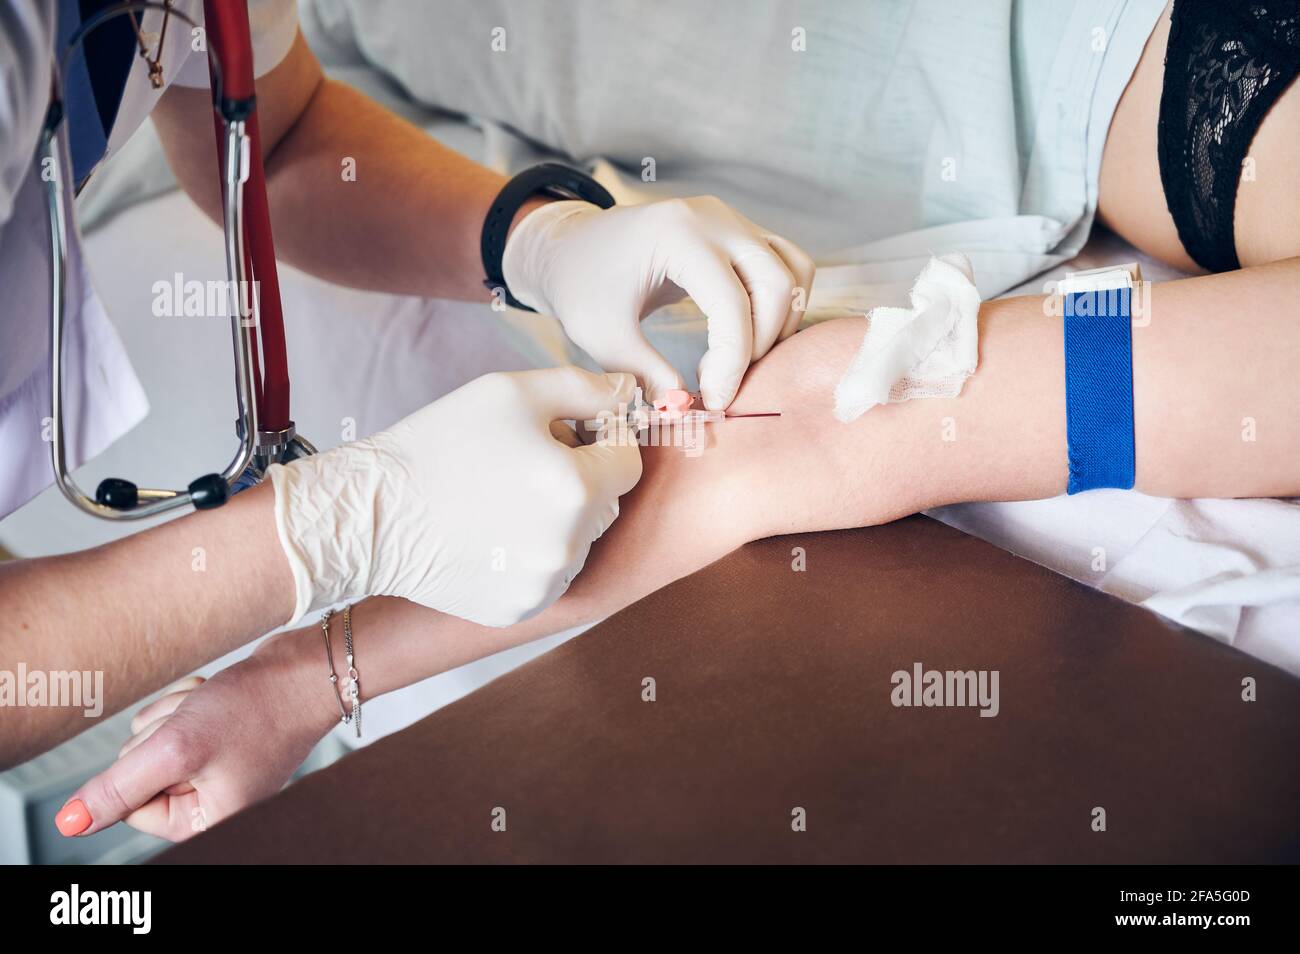 Gros plan des mains de l'anesthésiste dans des gants stériles injectant une dose d'anesthésique. Médecin insérant l'aiguille dans le bras du patient tout en injectant le médicament anesthésique avant l'intervention chirurgicale. Concept de médecine. Banque D'Images